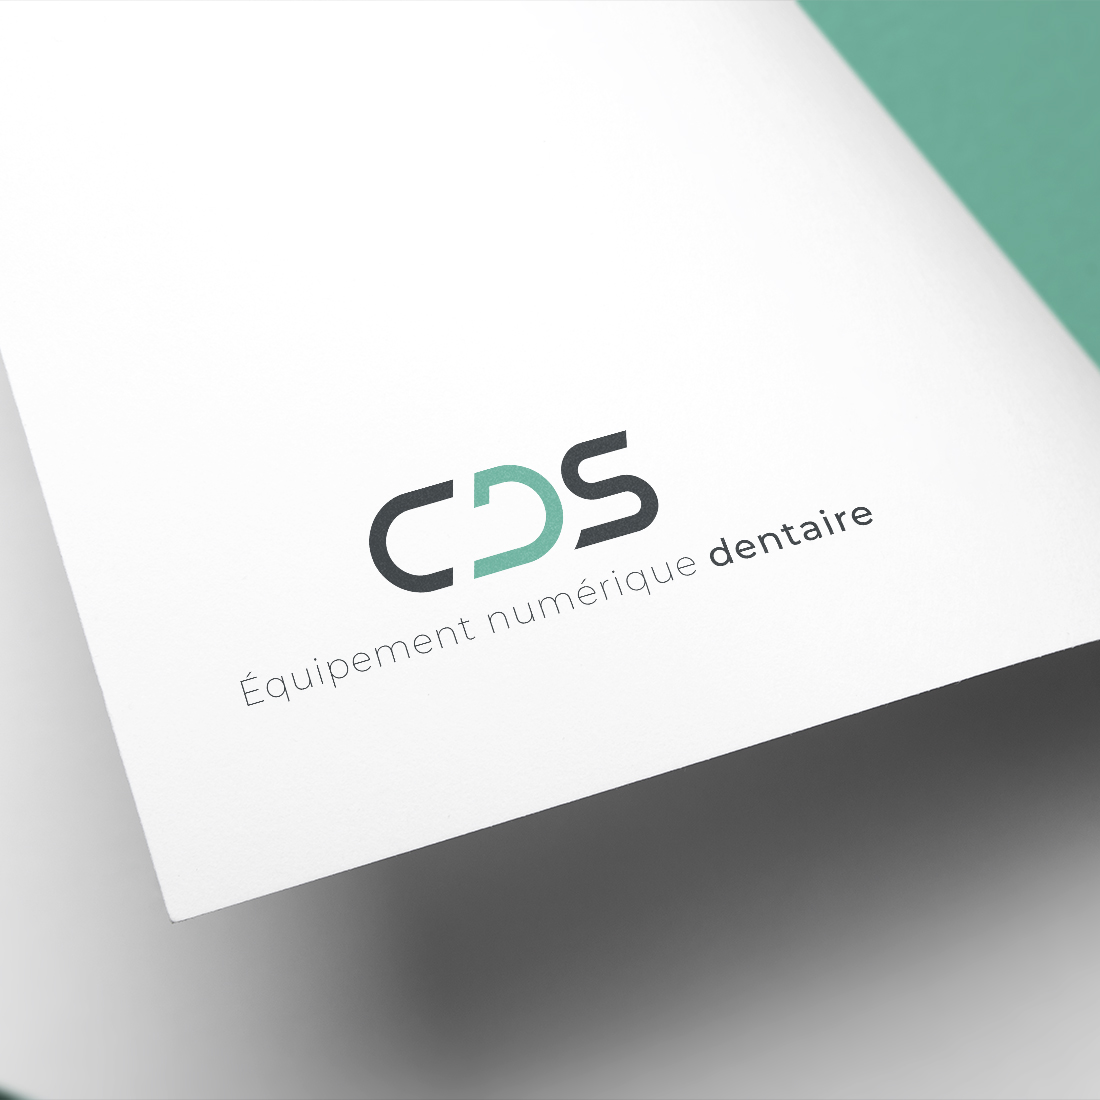 CDS_logo_rea_02b